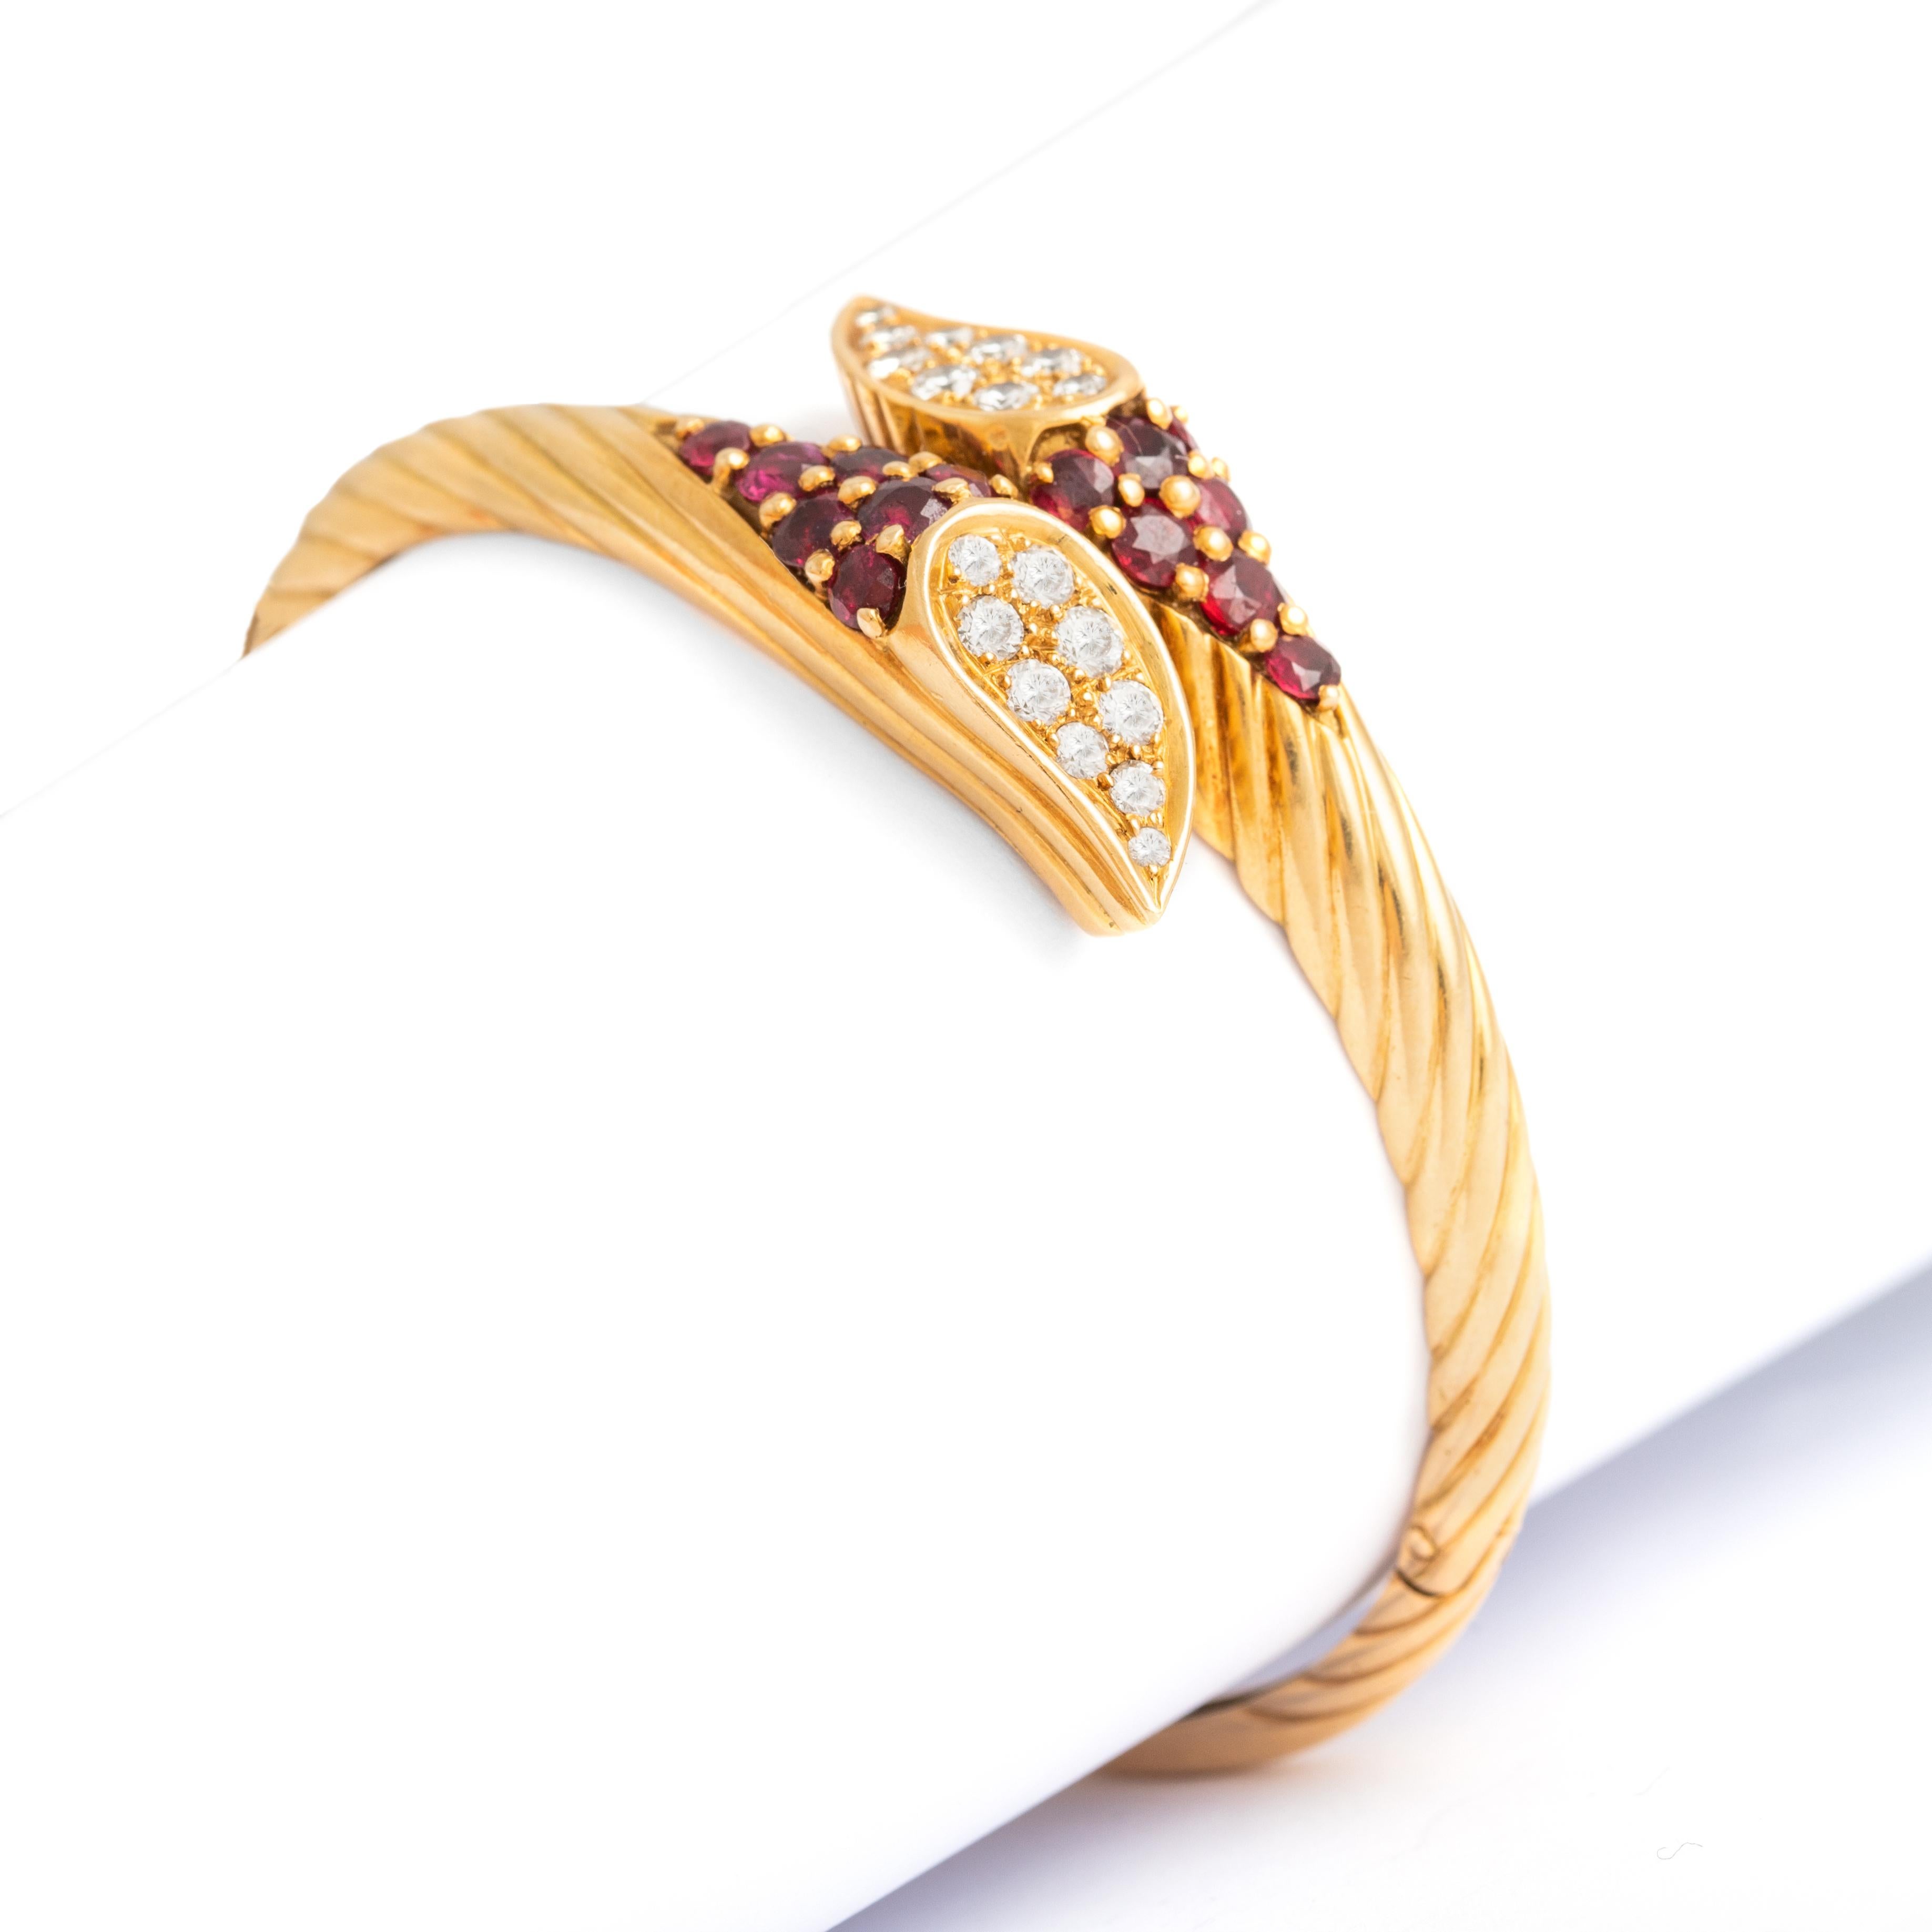 Bracelet en or jaune 18K avec diamants et rubis.
Poids : 29,07 grammes
Circonférence approximative : 17,75 centimètres.